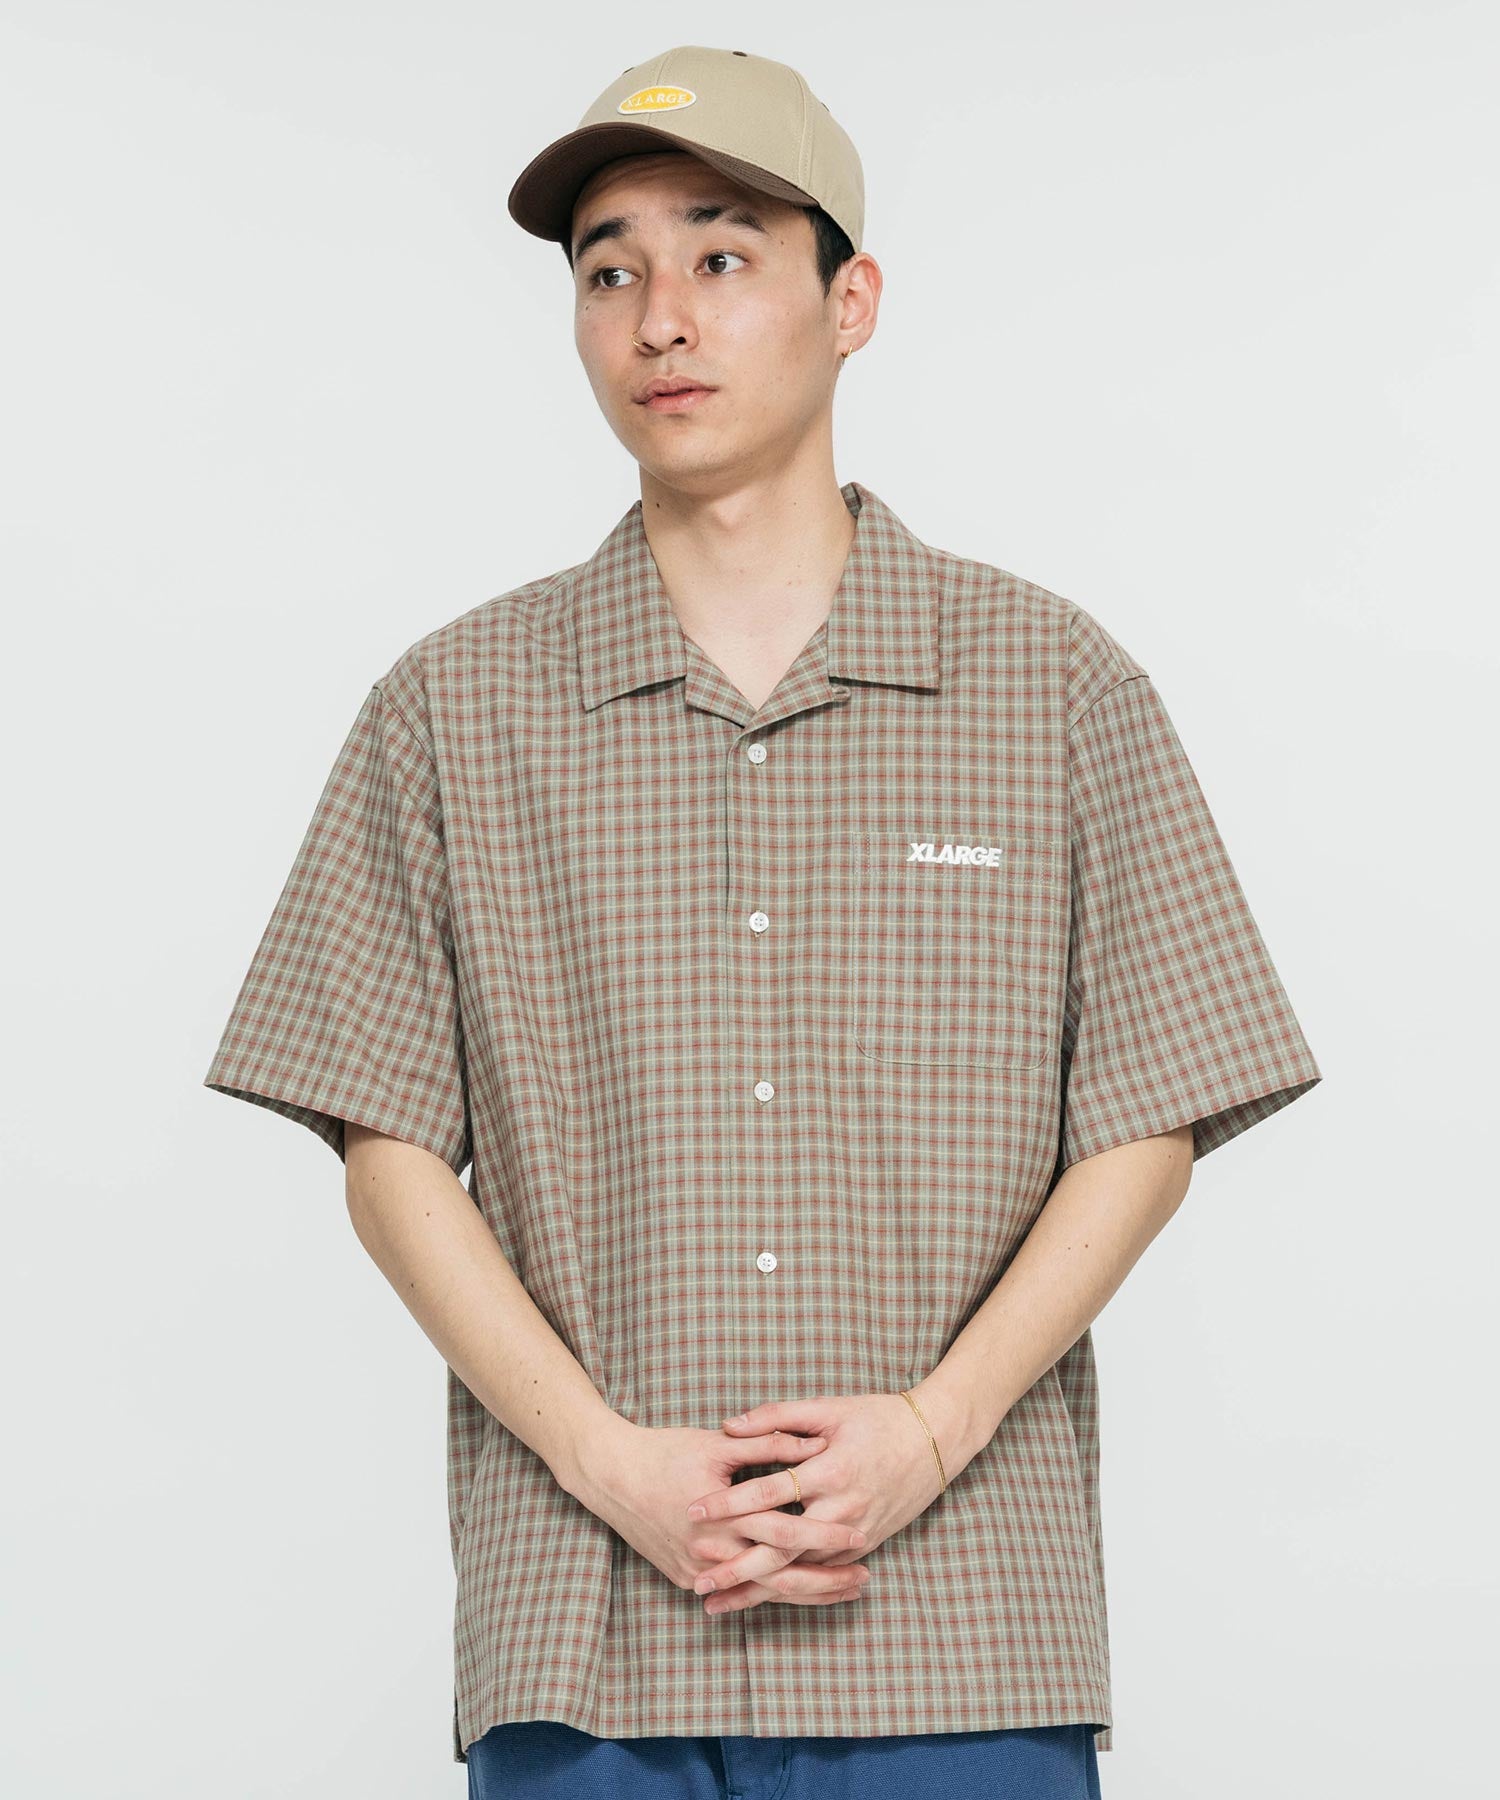 เสื้อเชิ้ต XLARGE รุ่น Embroidered Plaid S/S Shirt